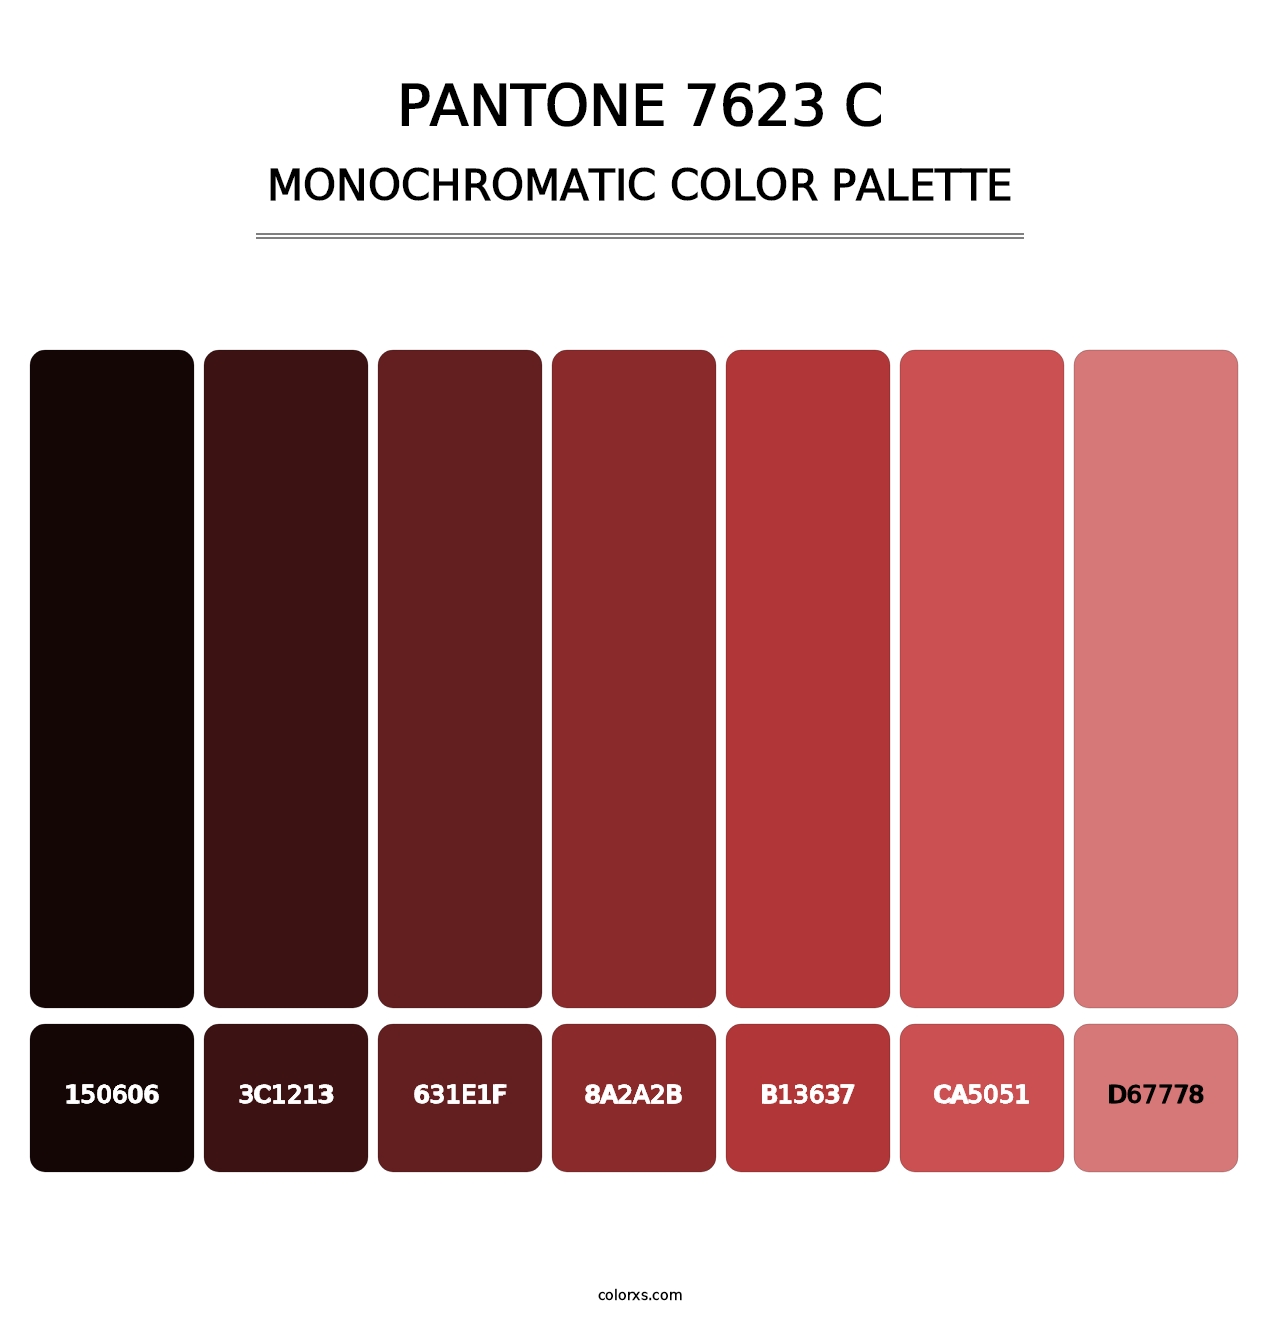 PANTONE 7623 C - Monochromatic Color Palette